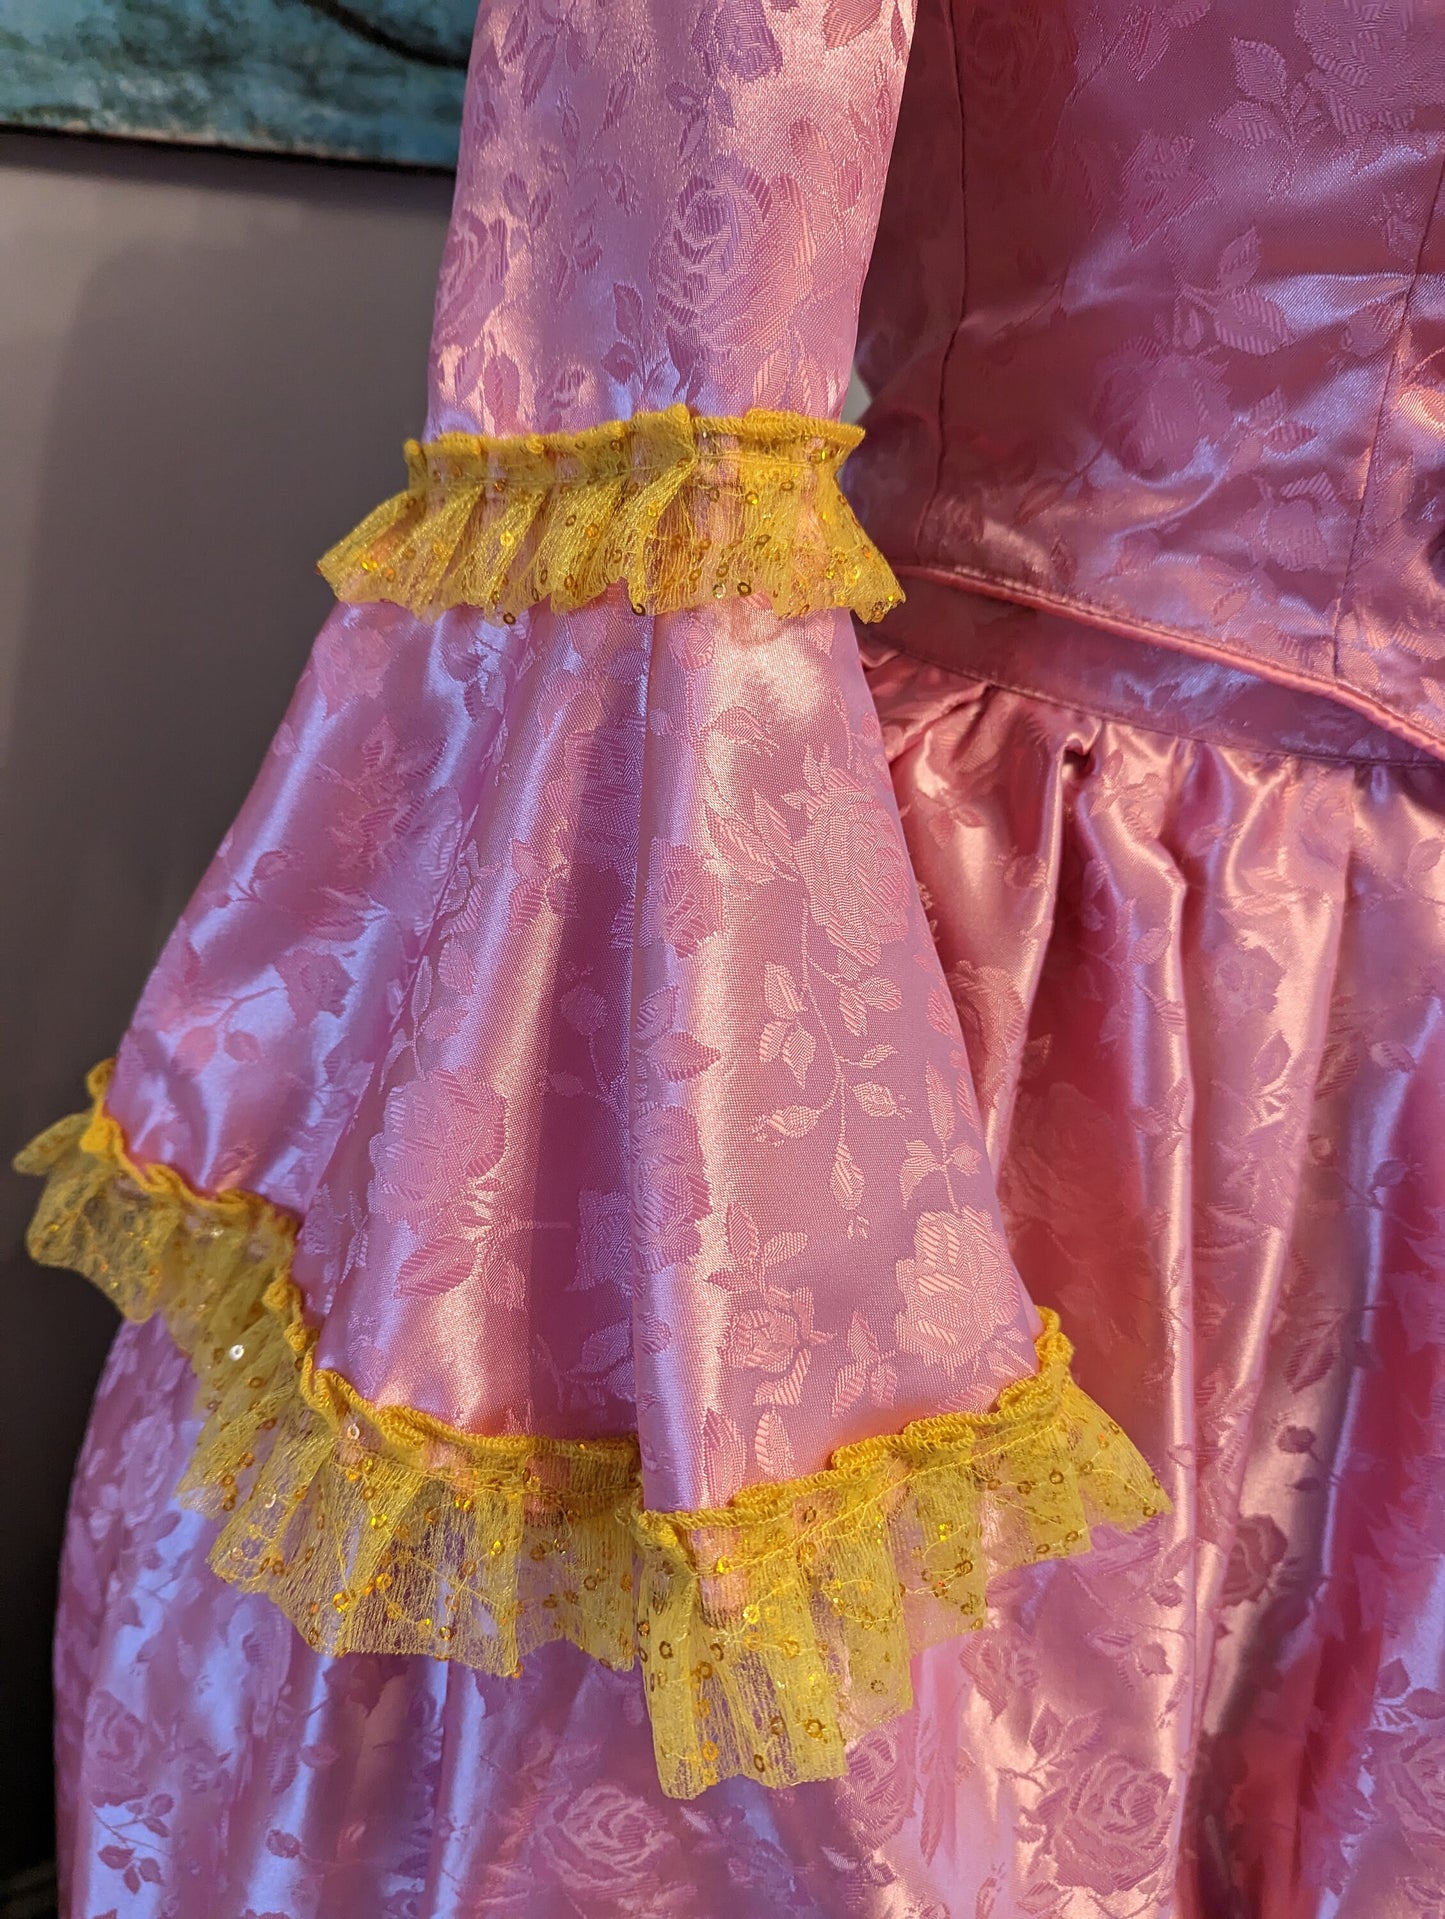 
                  
                    Pink Satin Georgian Dress
                  
                